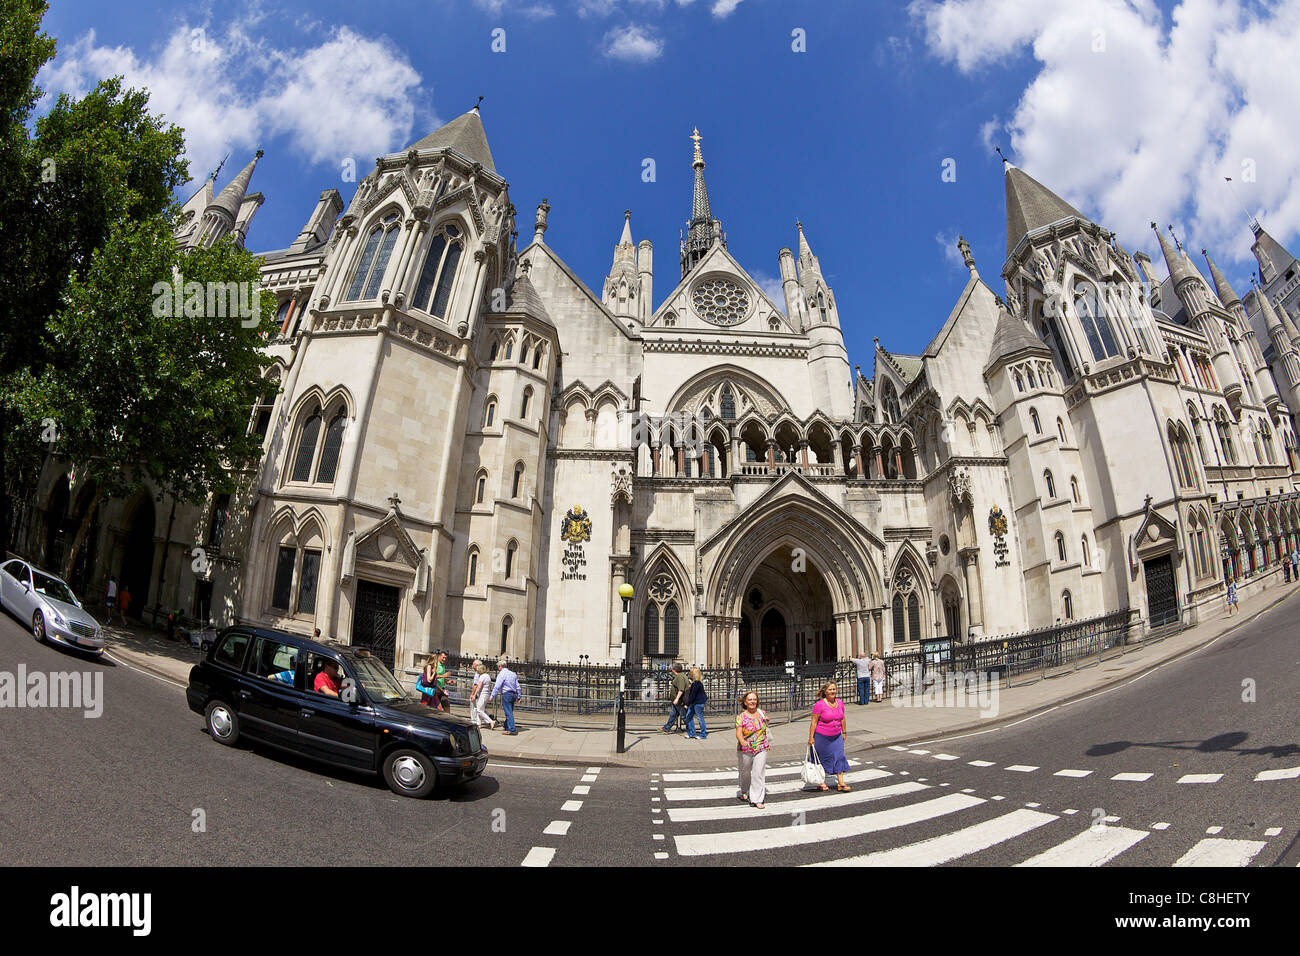 Königliche Höfen von Gerechtigkeit, City of London, England, UK, Vereinigtes Königreich, GB, Großbritannien, britische Inseln, Europa Stockfoto